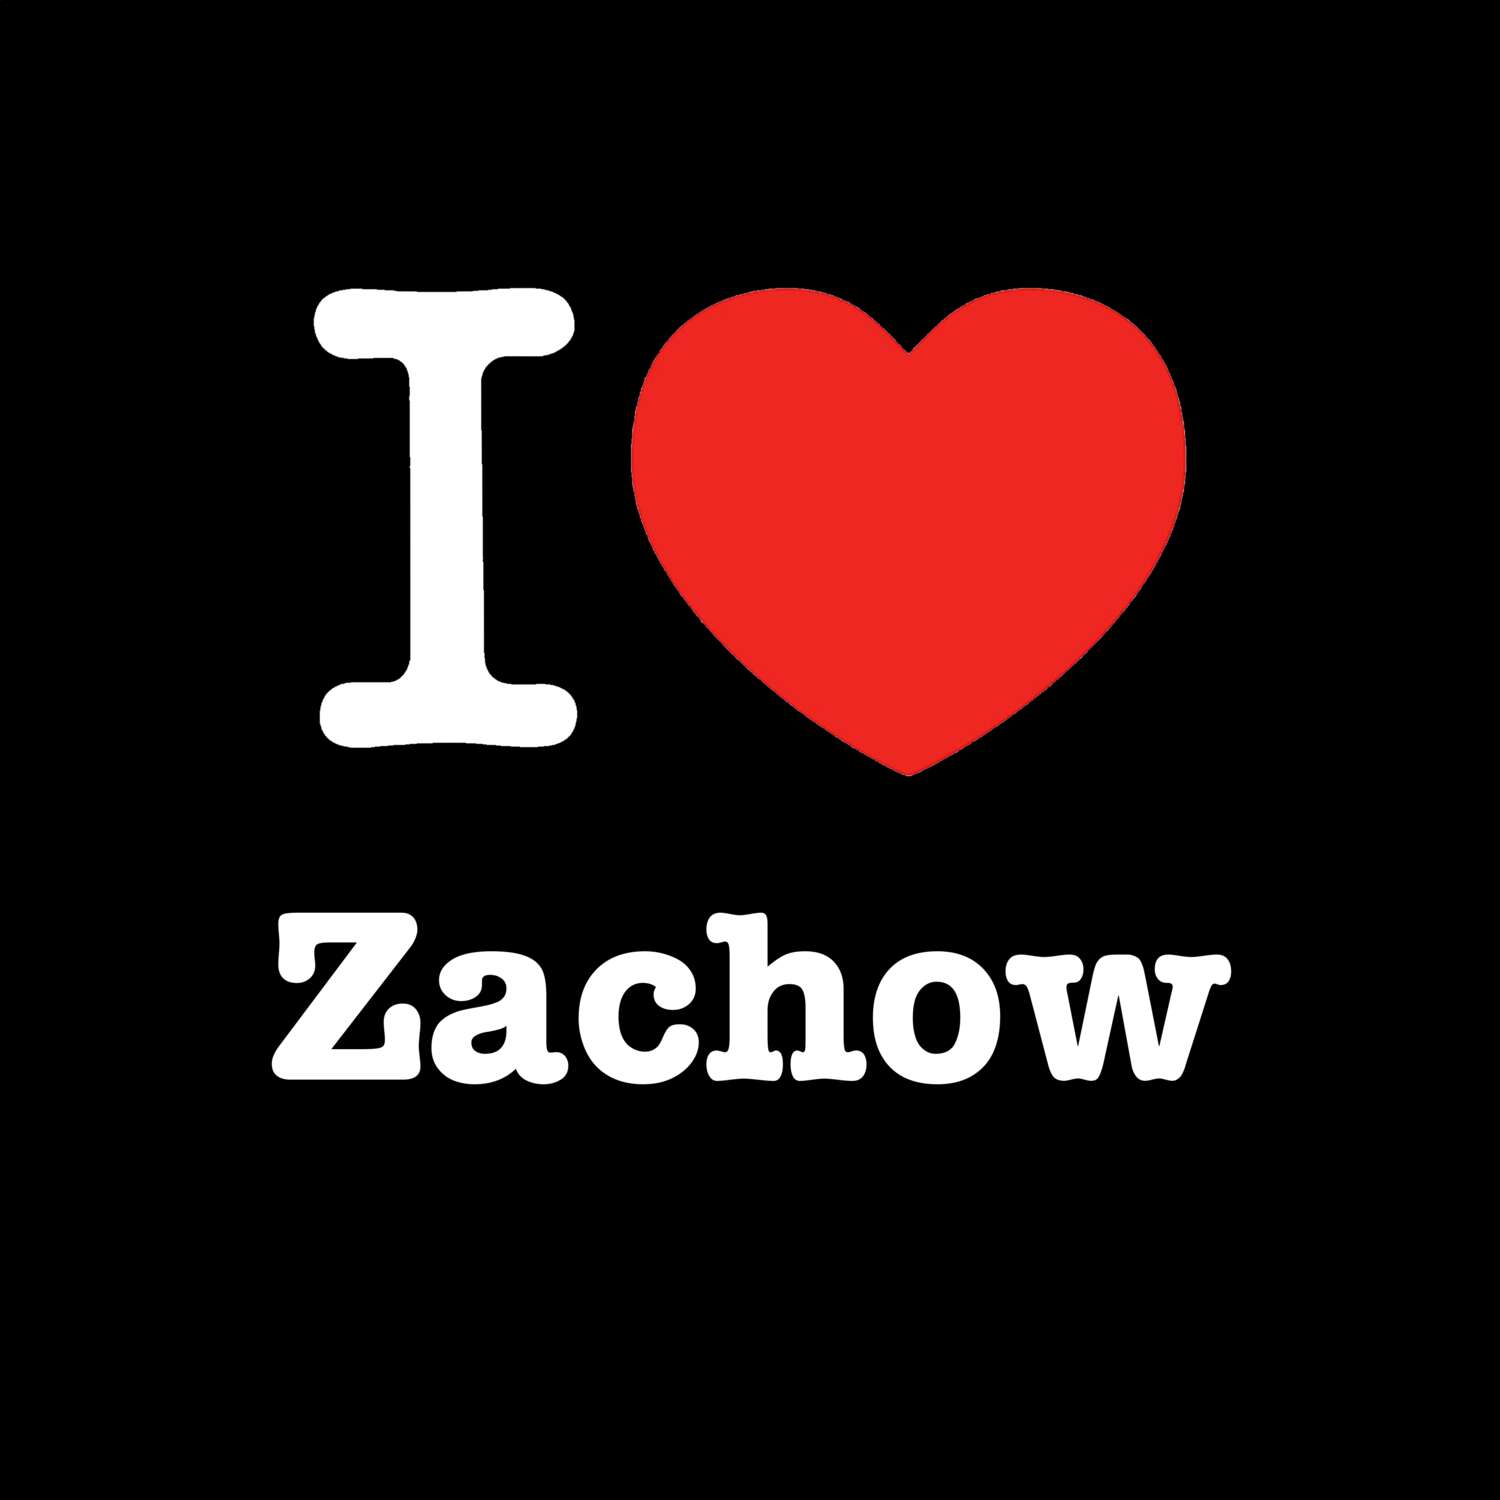 Zachow T-Shirt »I love«